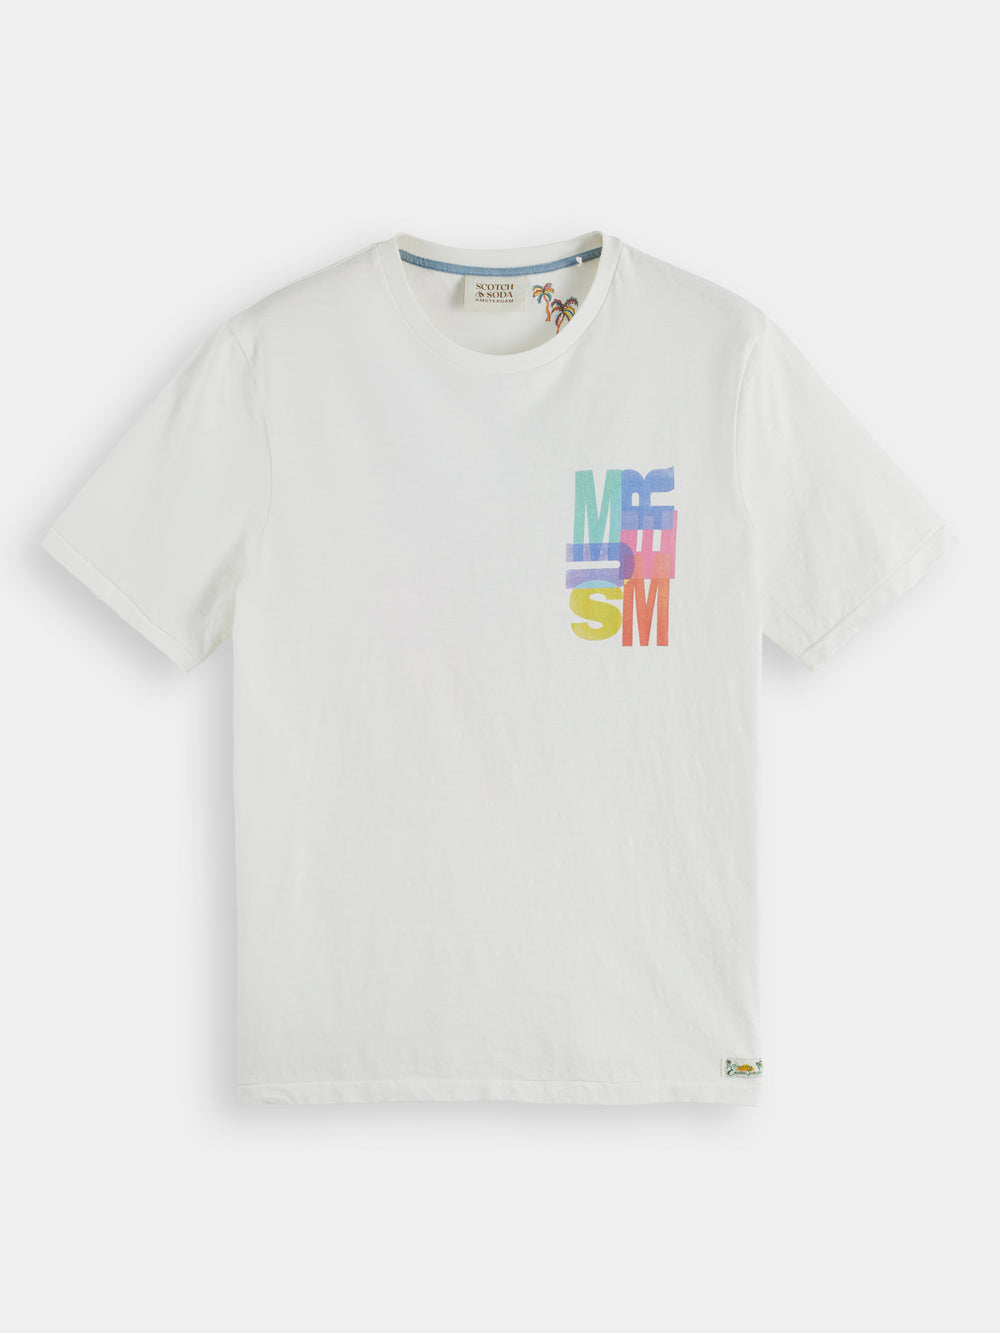 Summer artwork t-shirt - Scotch & Soda AU